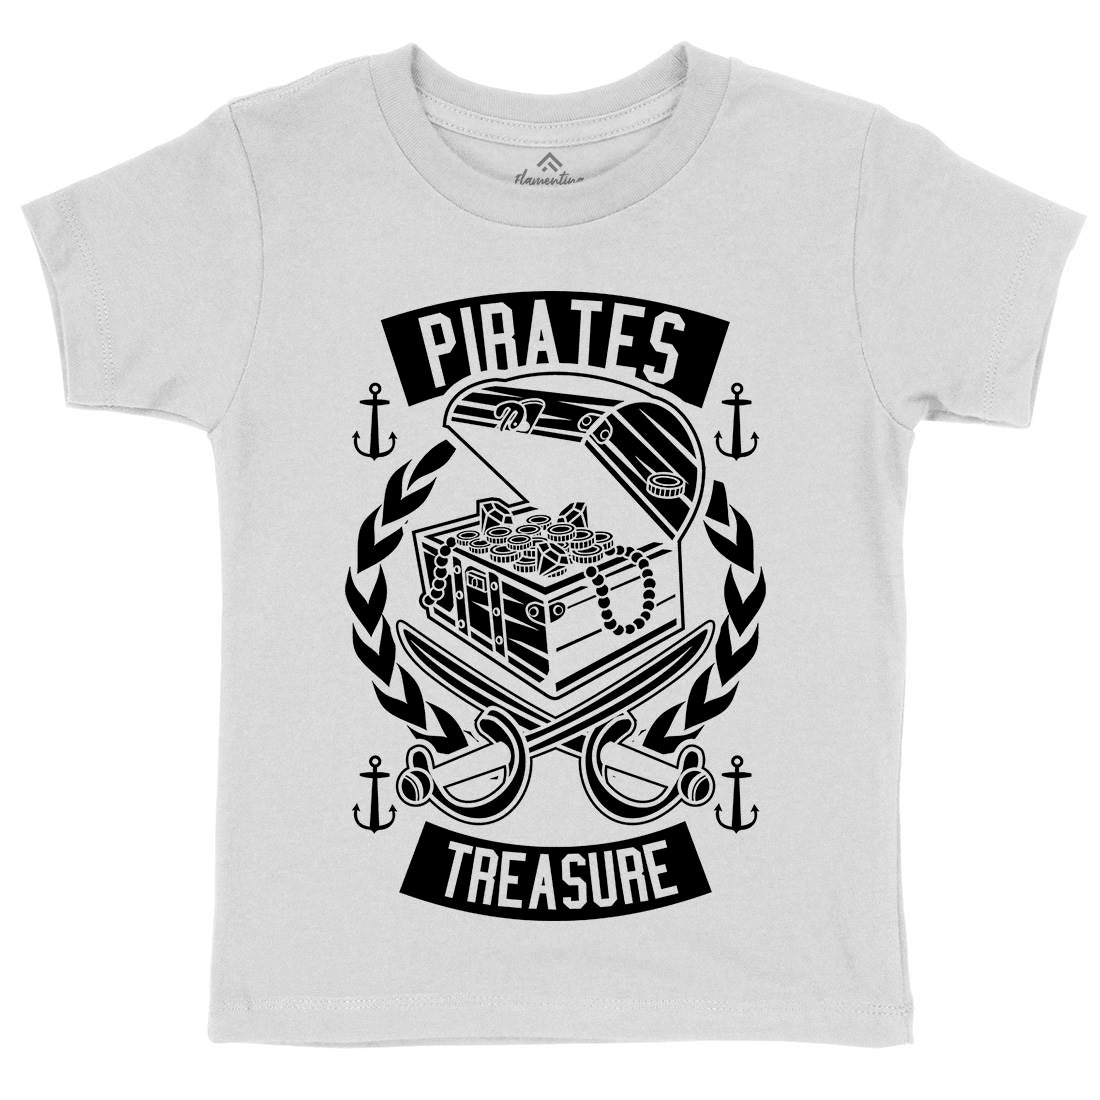 Pirates Treasure Kids Crew Neck T-Shirt Navy B600